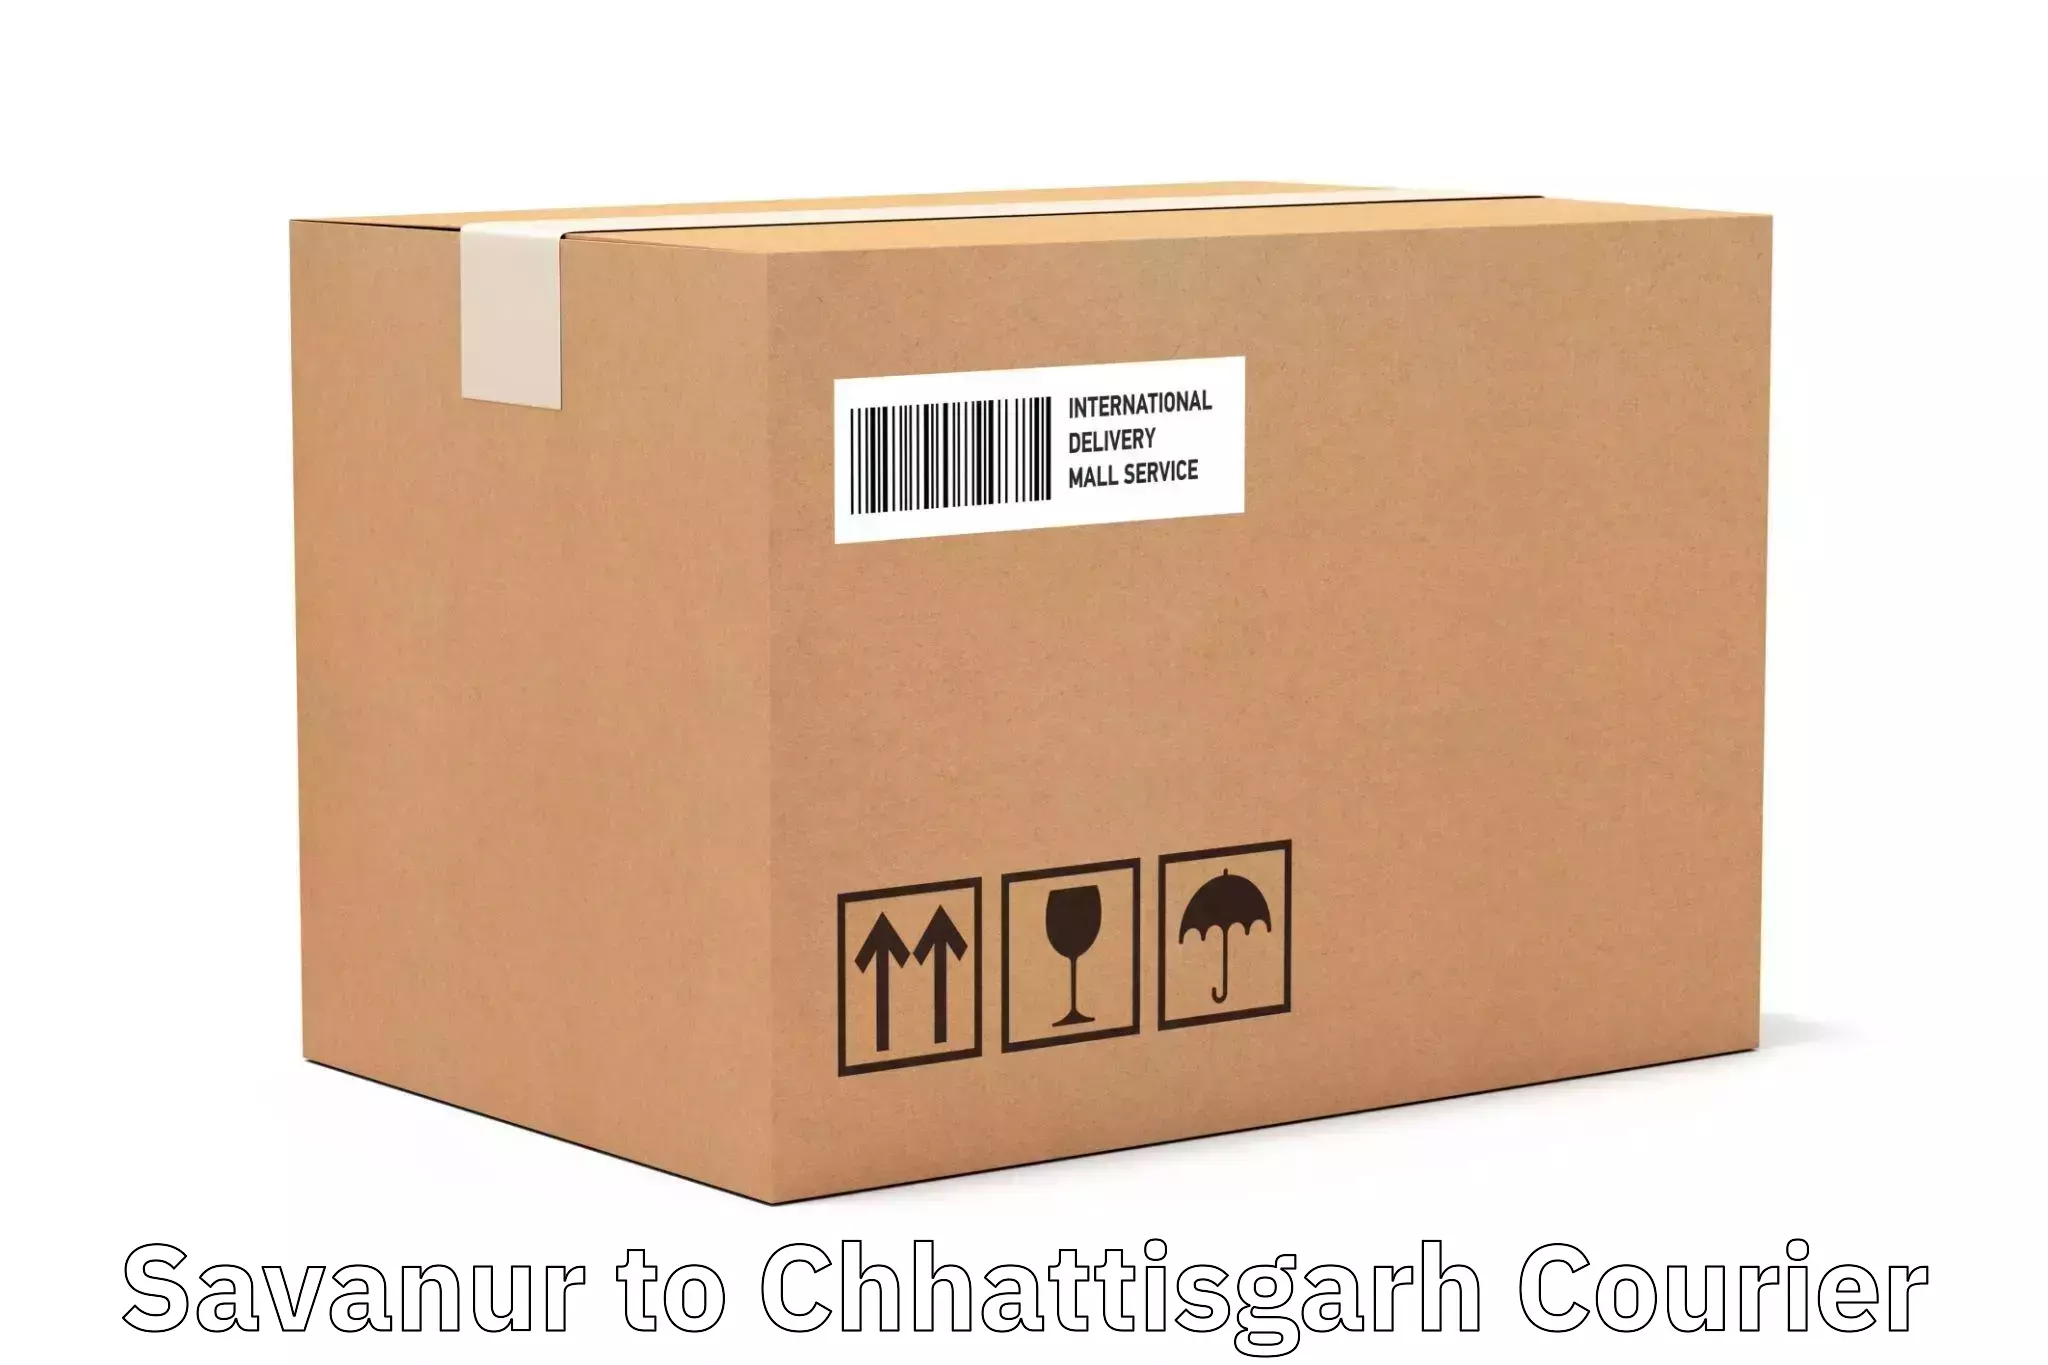 Doorstep delivery service Savanur to Chhattisgarh